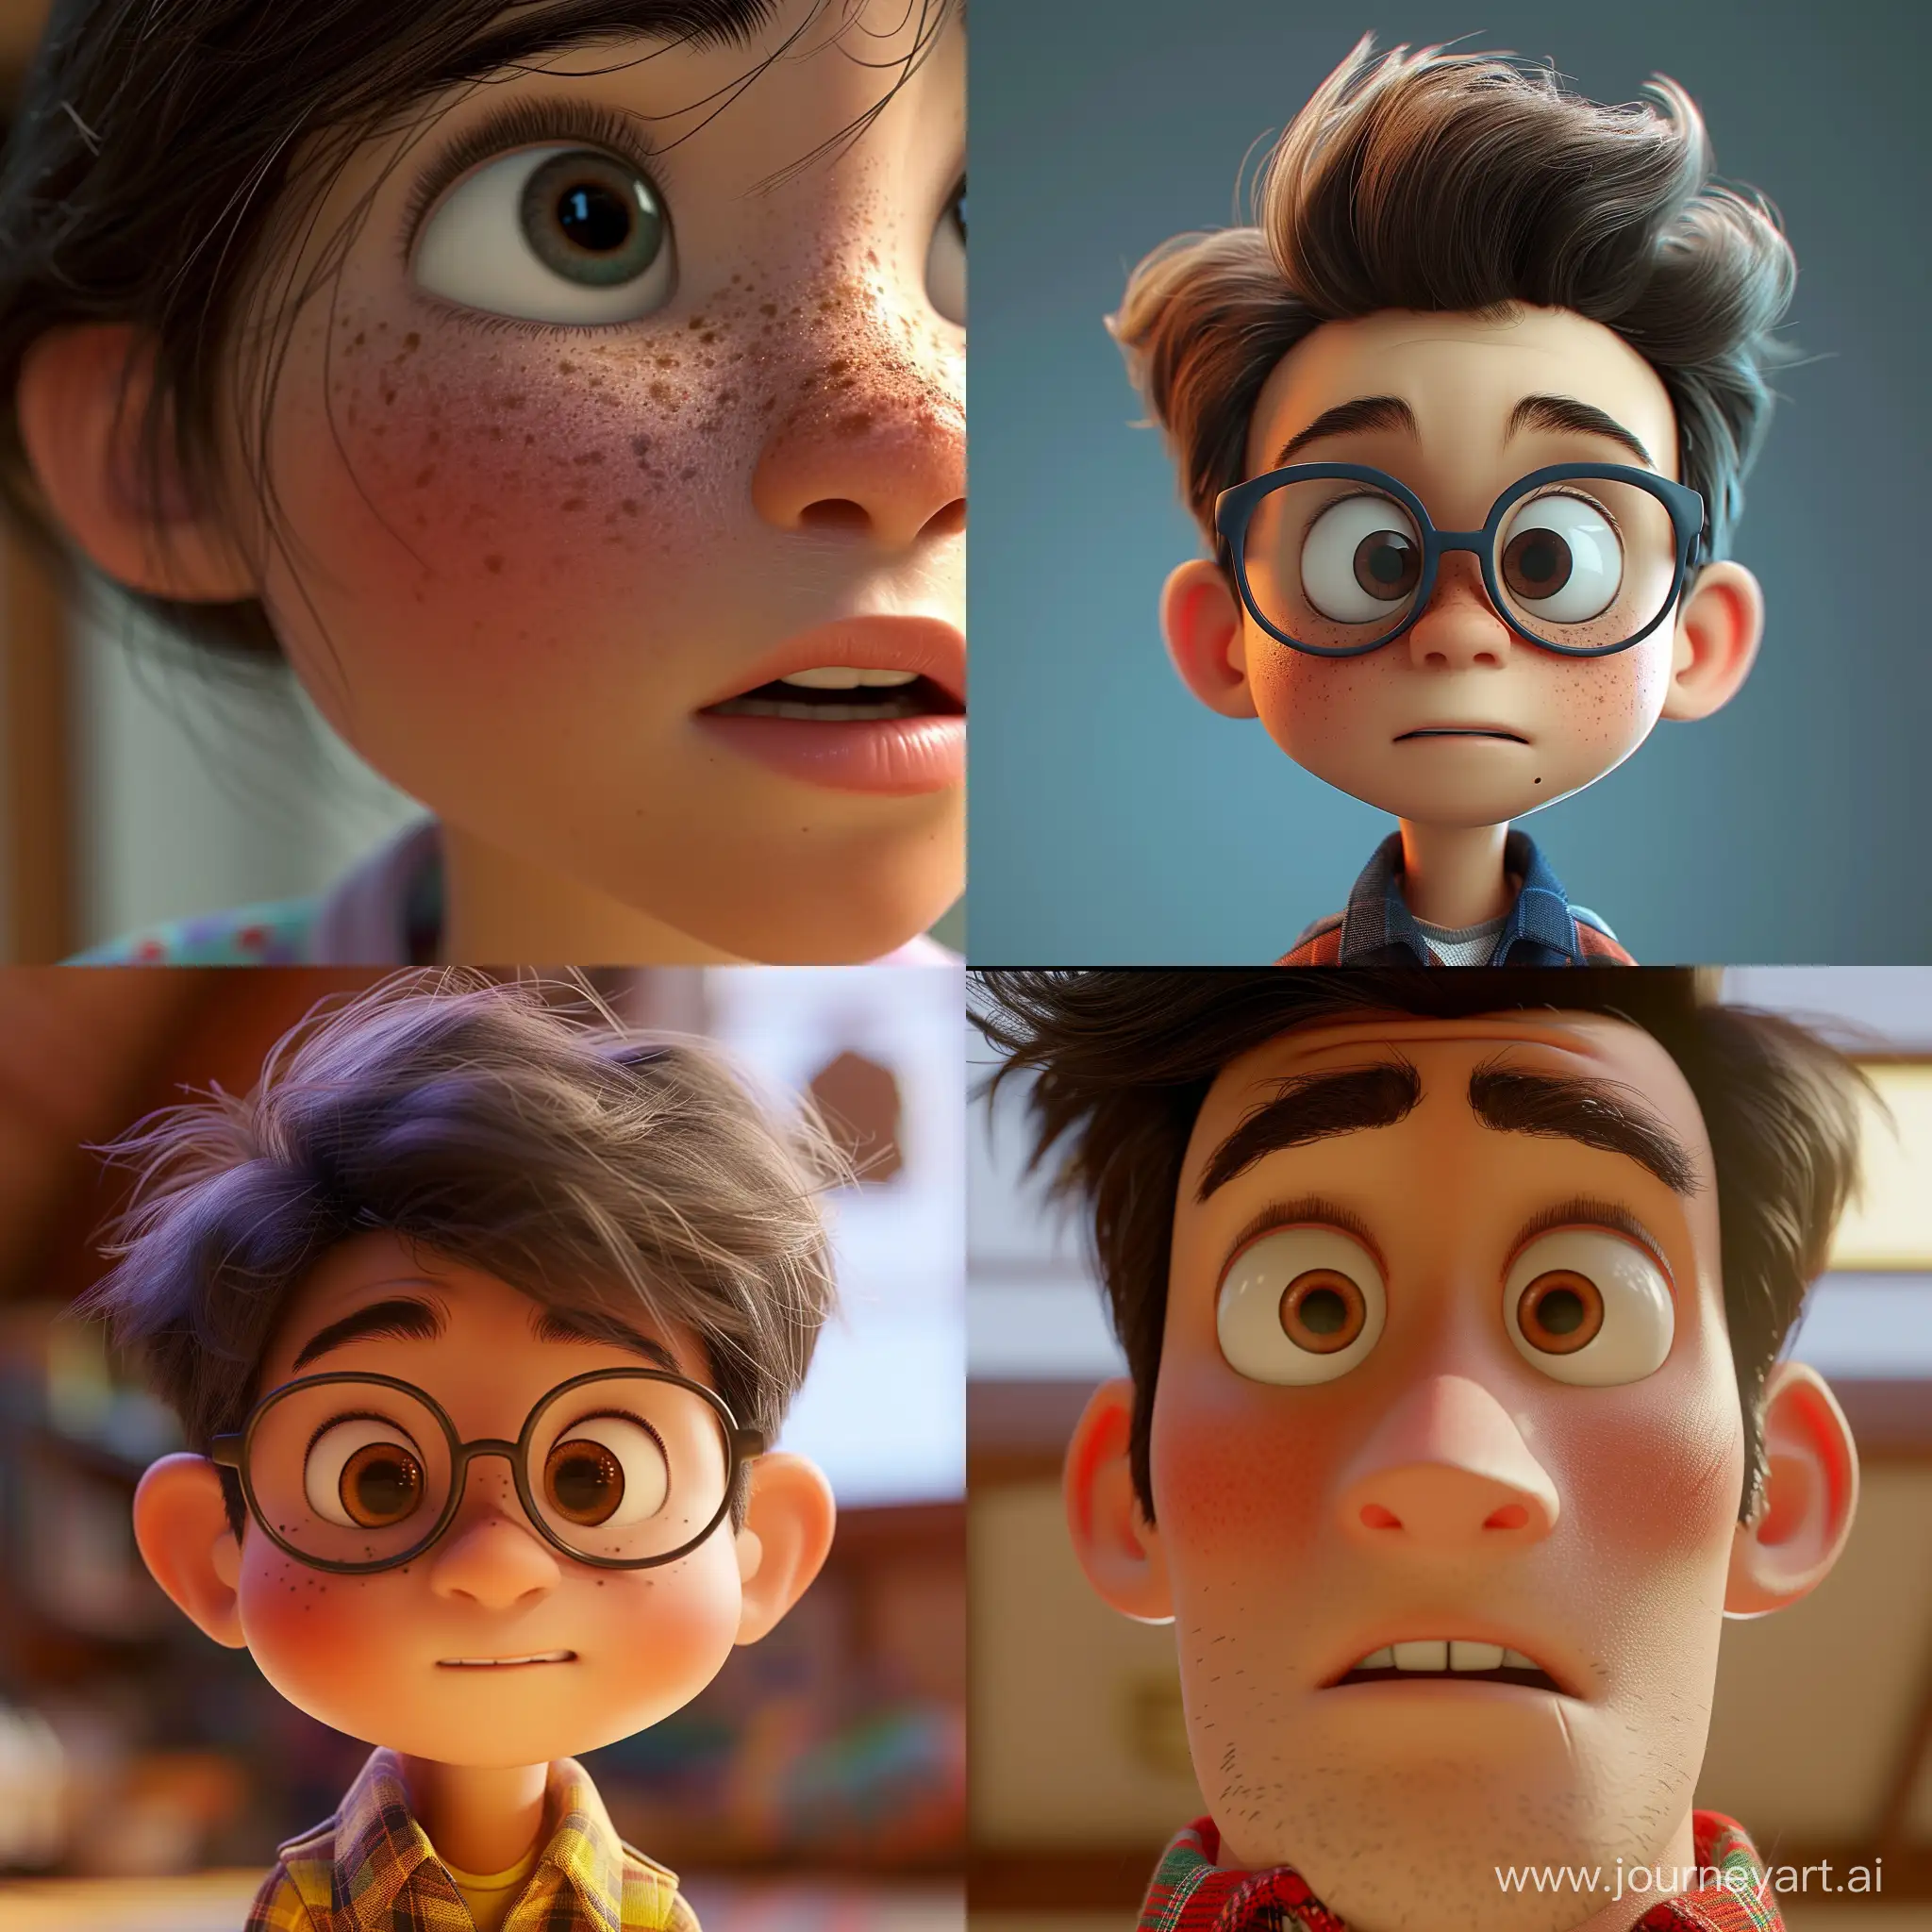 Pixar 3d style, Pixar cartoon characters, close-up